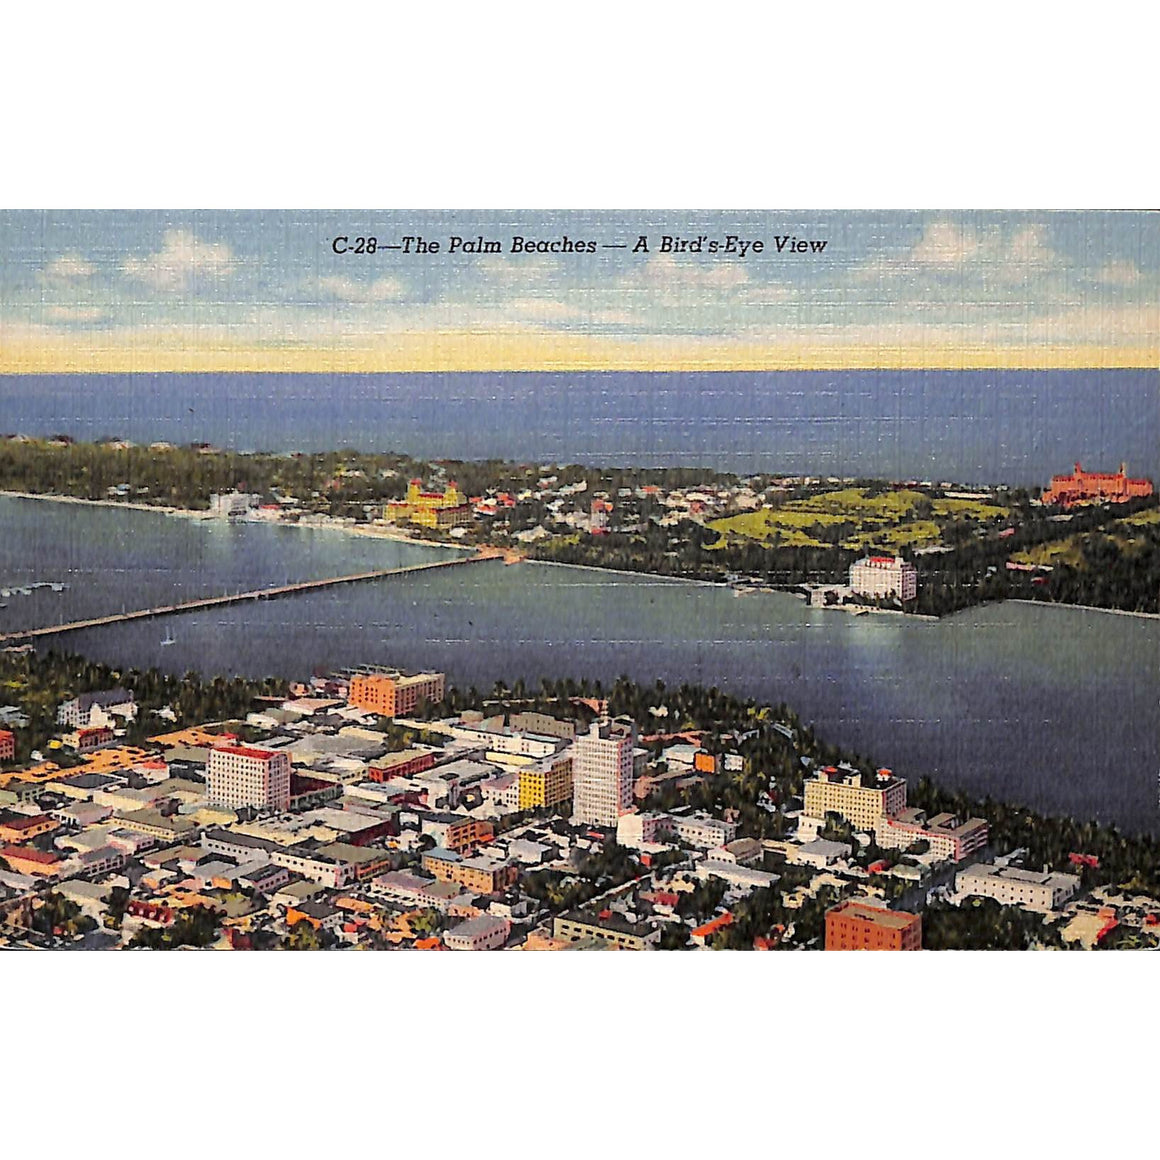 The Palm Beaches- A Bird's-Eye View" Post Card